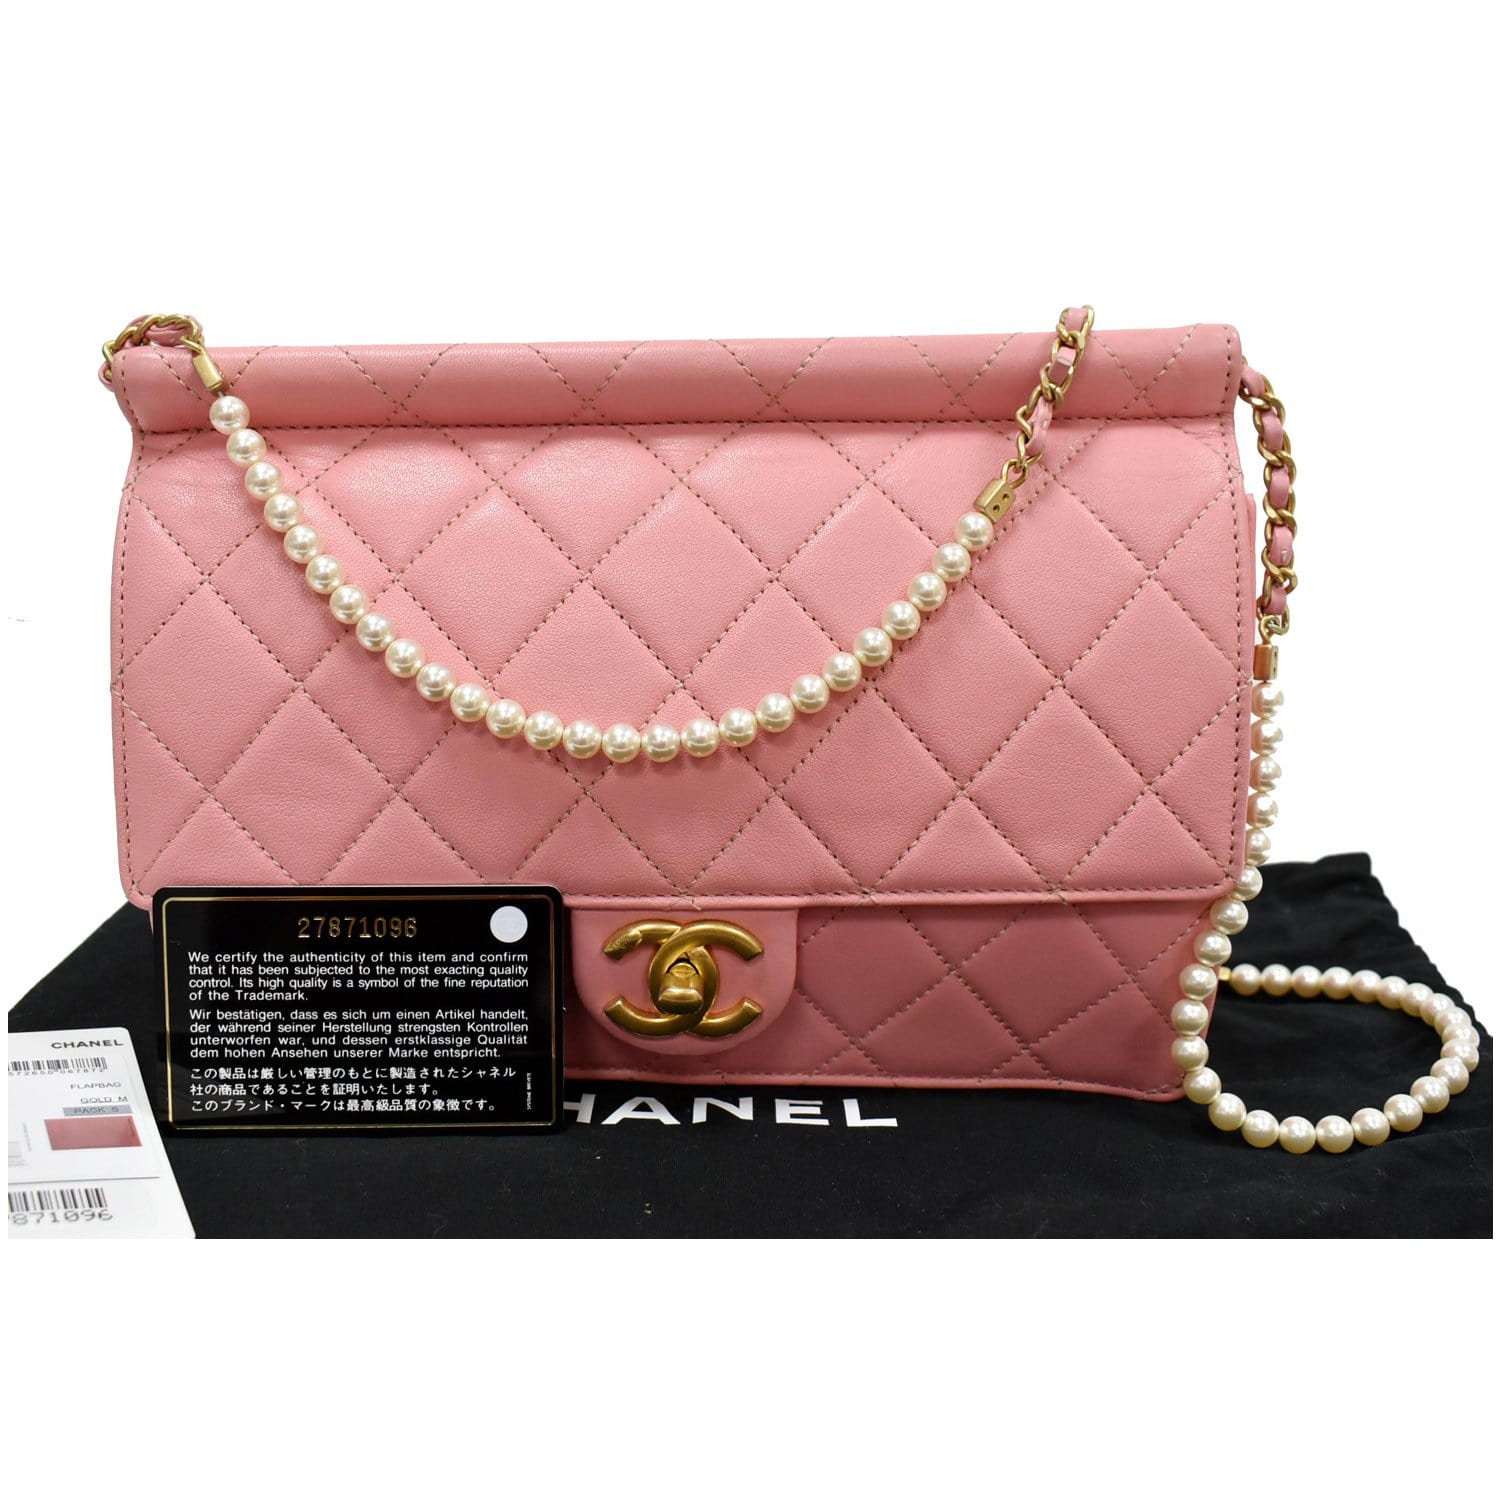 CHANEL Matelasse Costume Pearl Leather Shoulder Bag Pink - 25% OFF